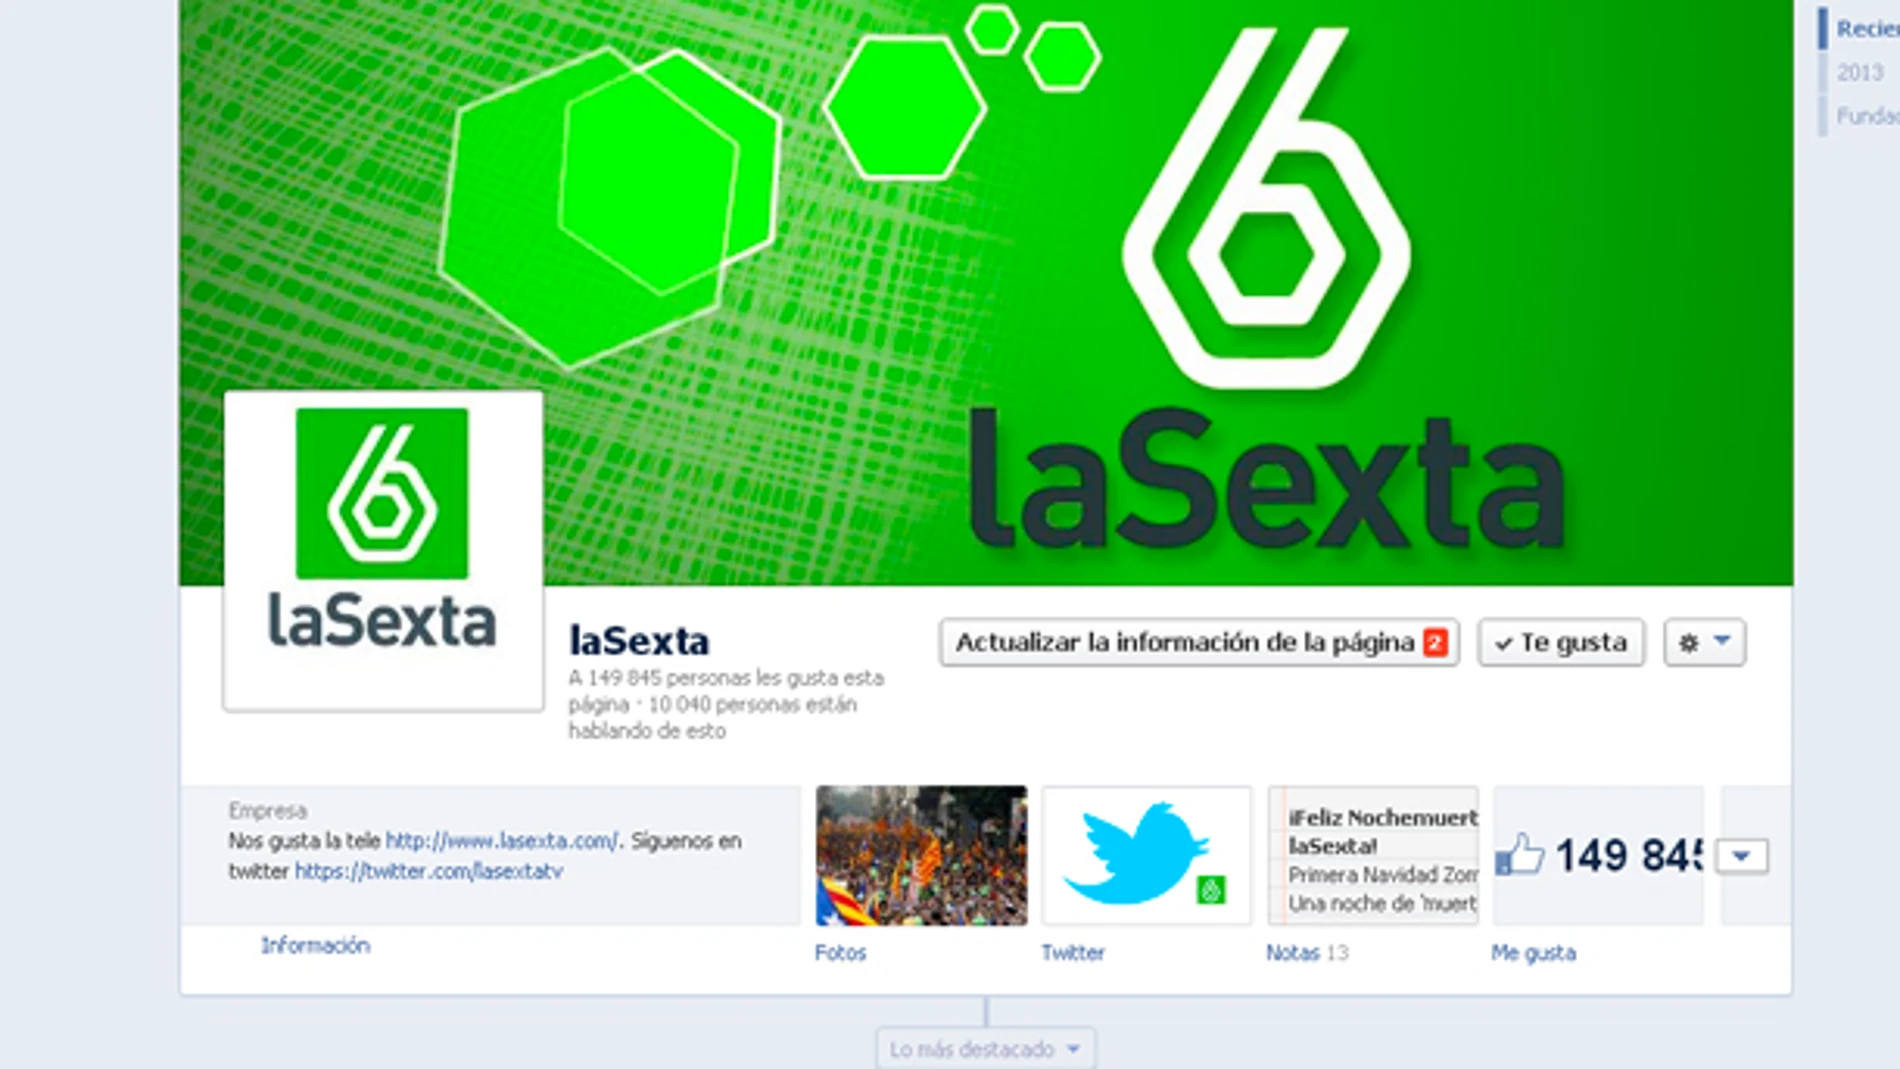 Facebook laSexta